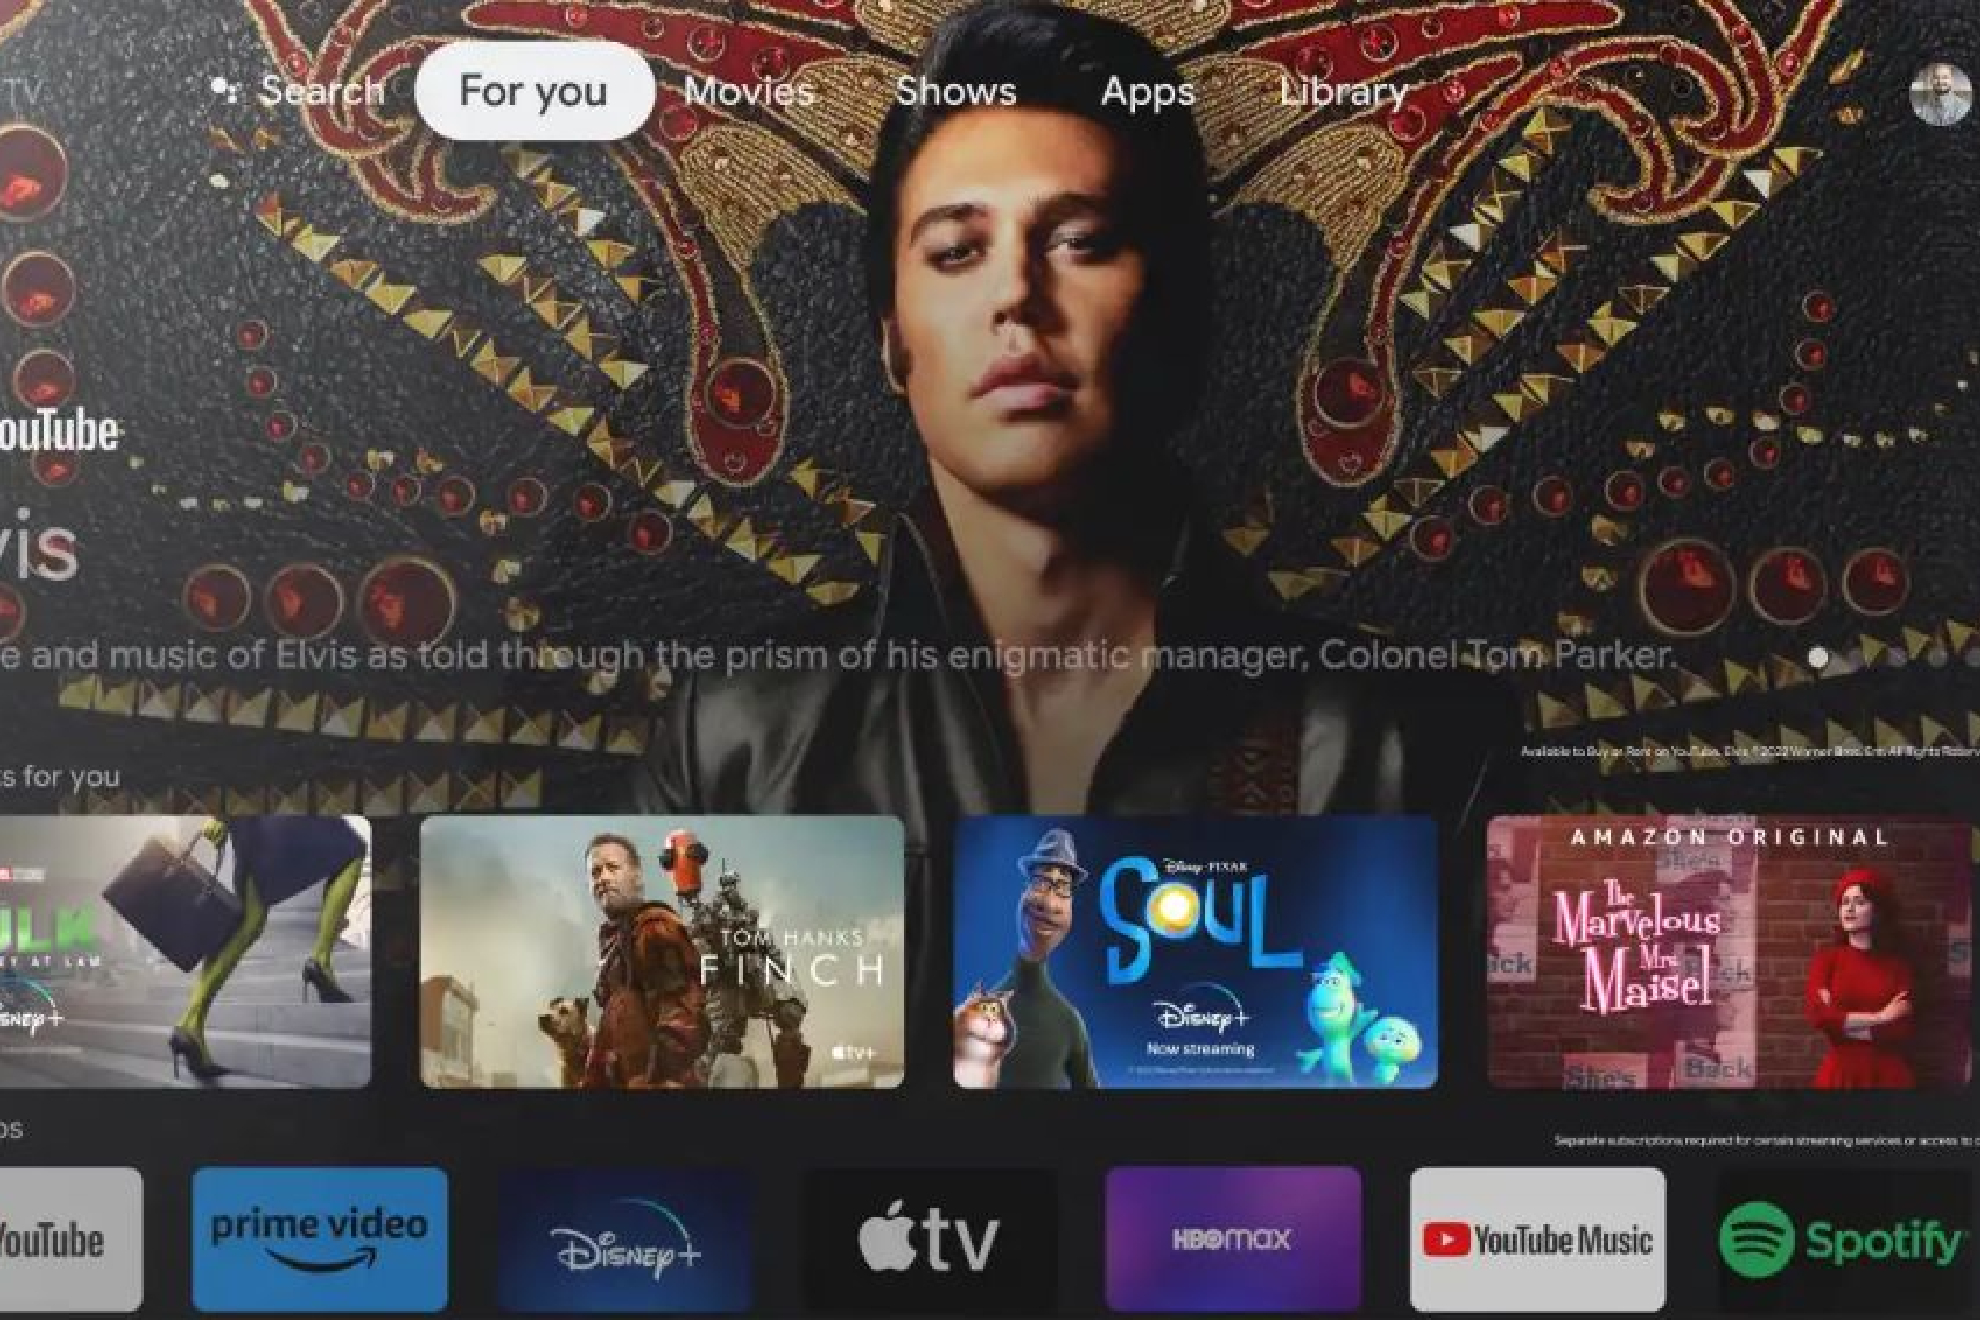 Google TV se renueva y cuenta con más de 30 servicios de TV y VOD